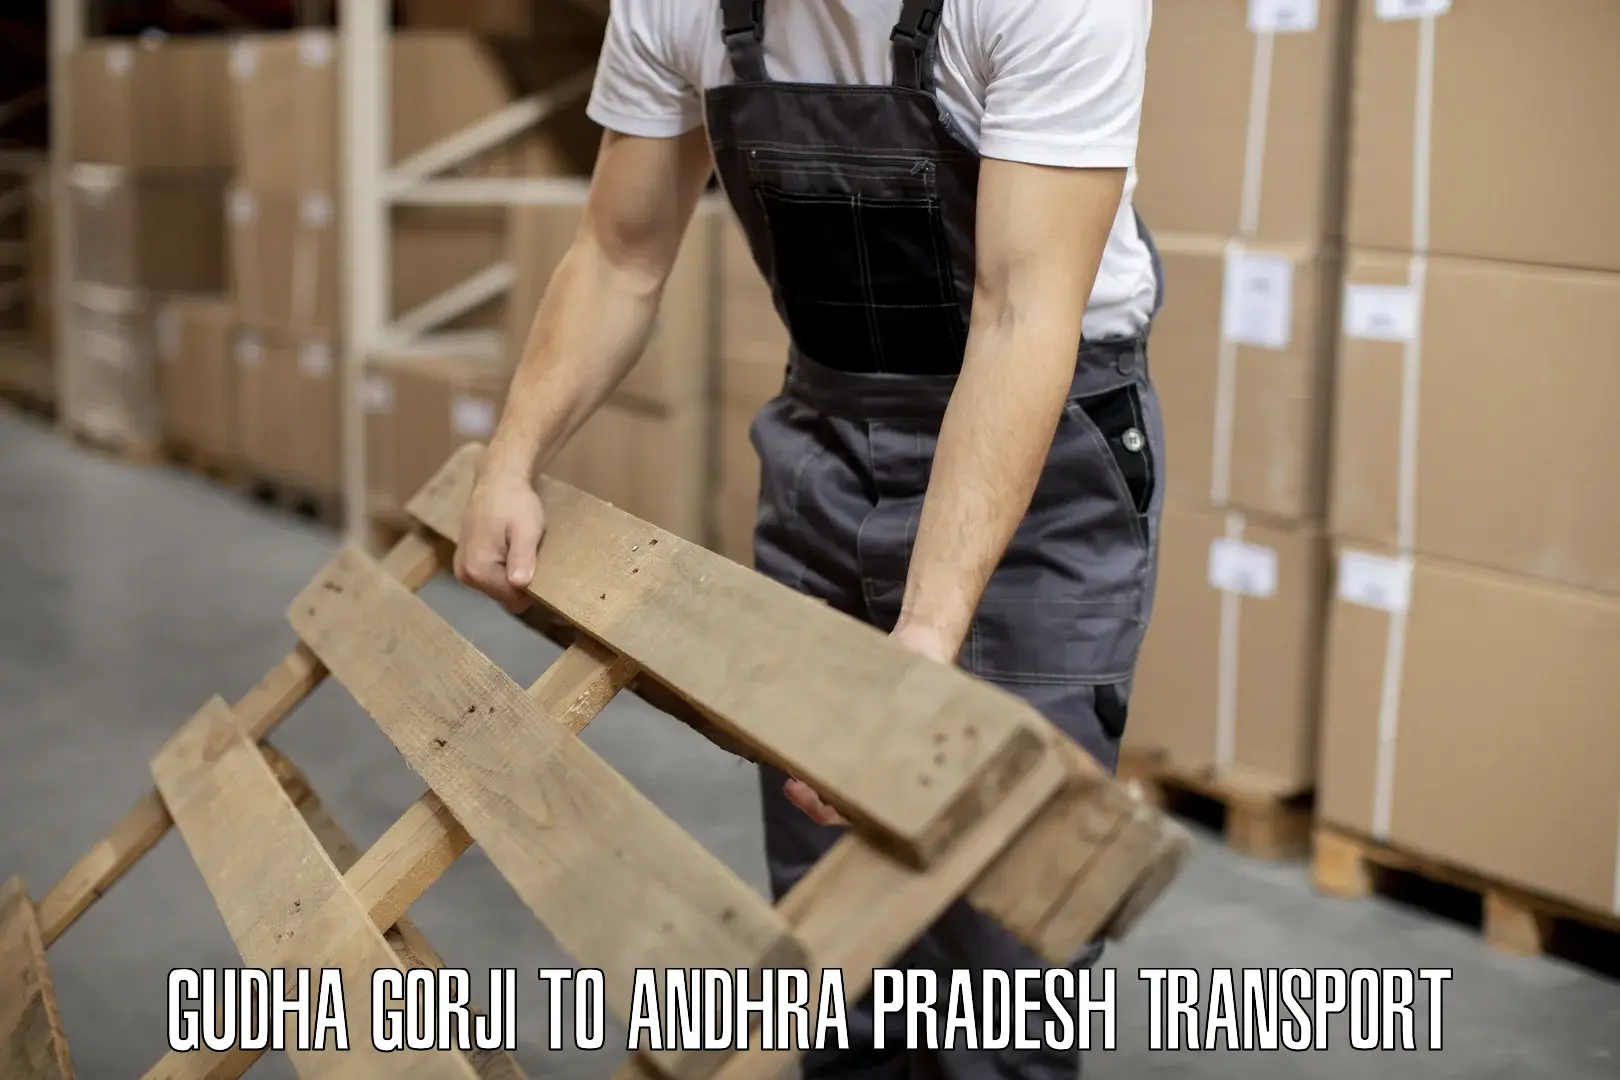 Road transport services Gudha Gorji to Andhra Pradesh